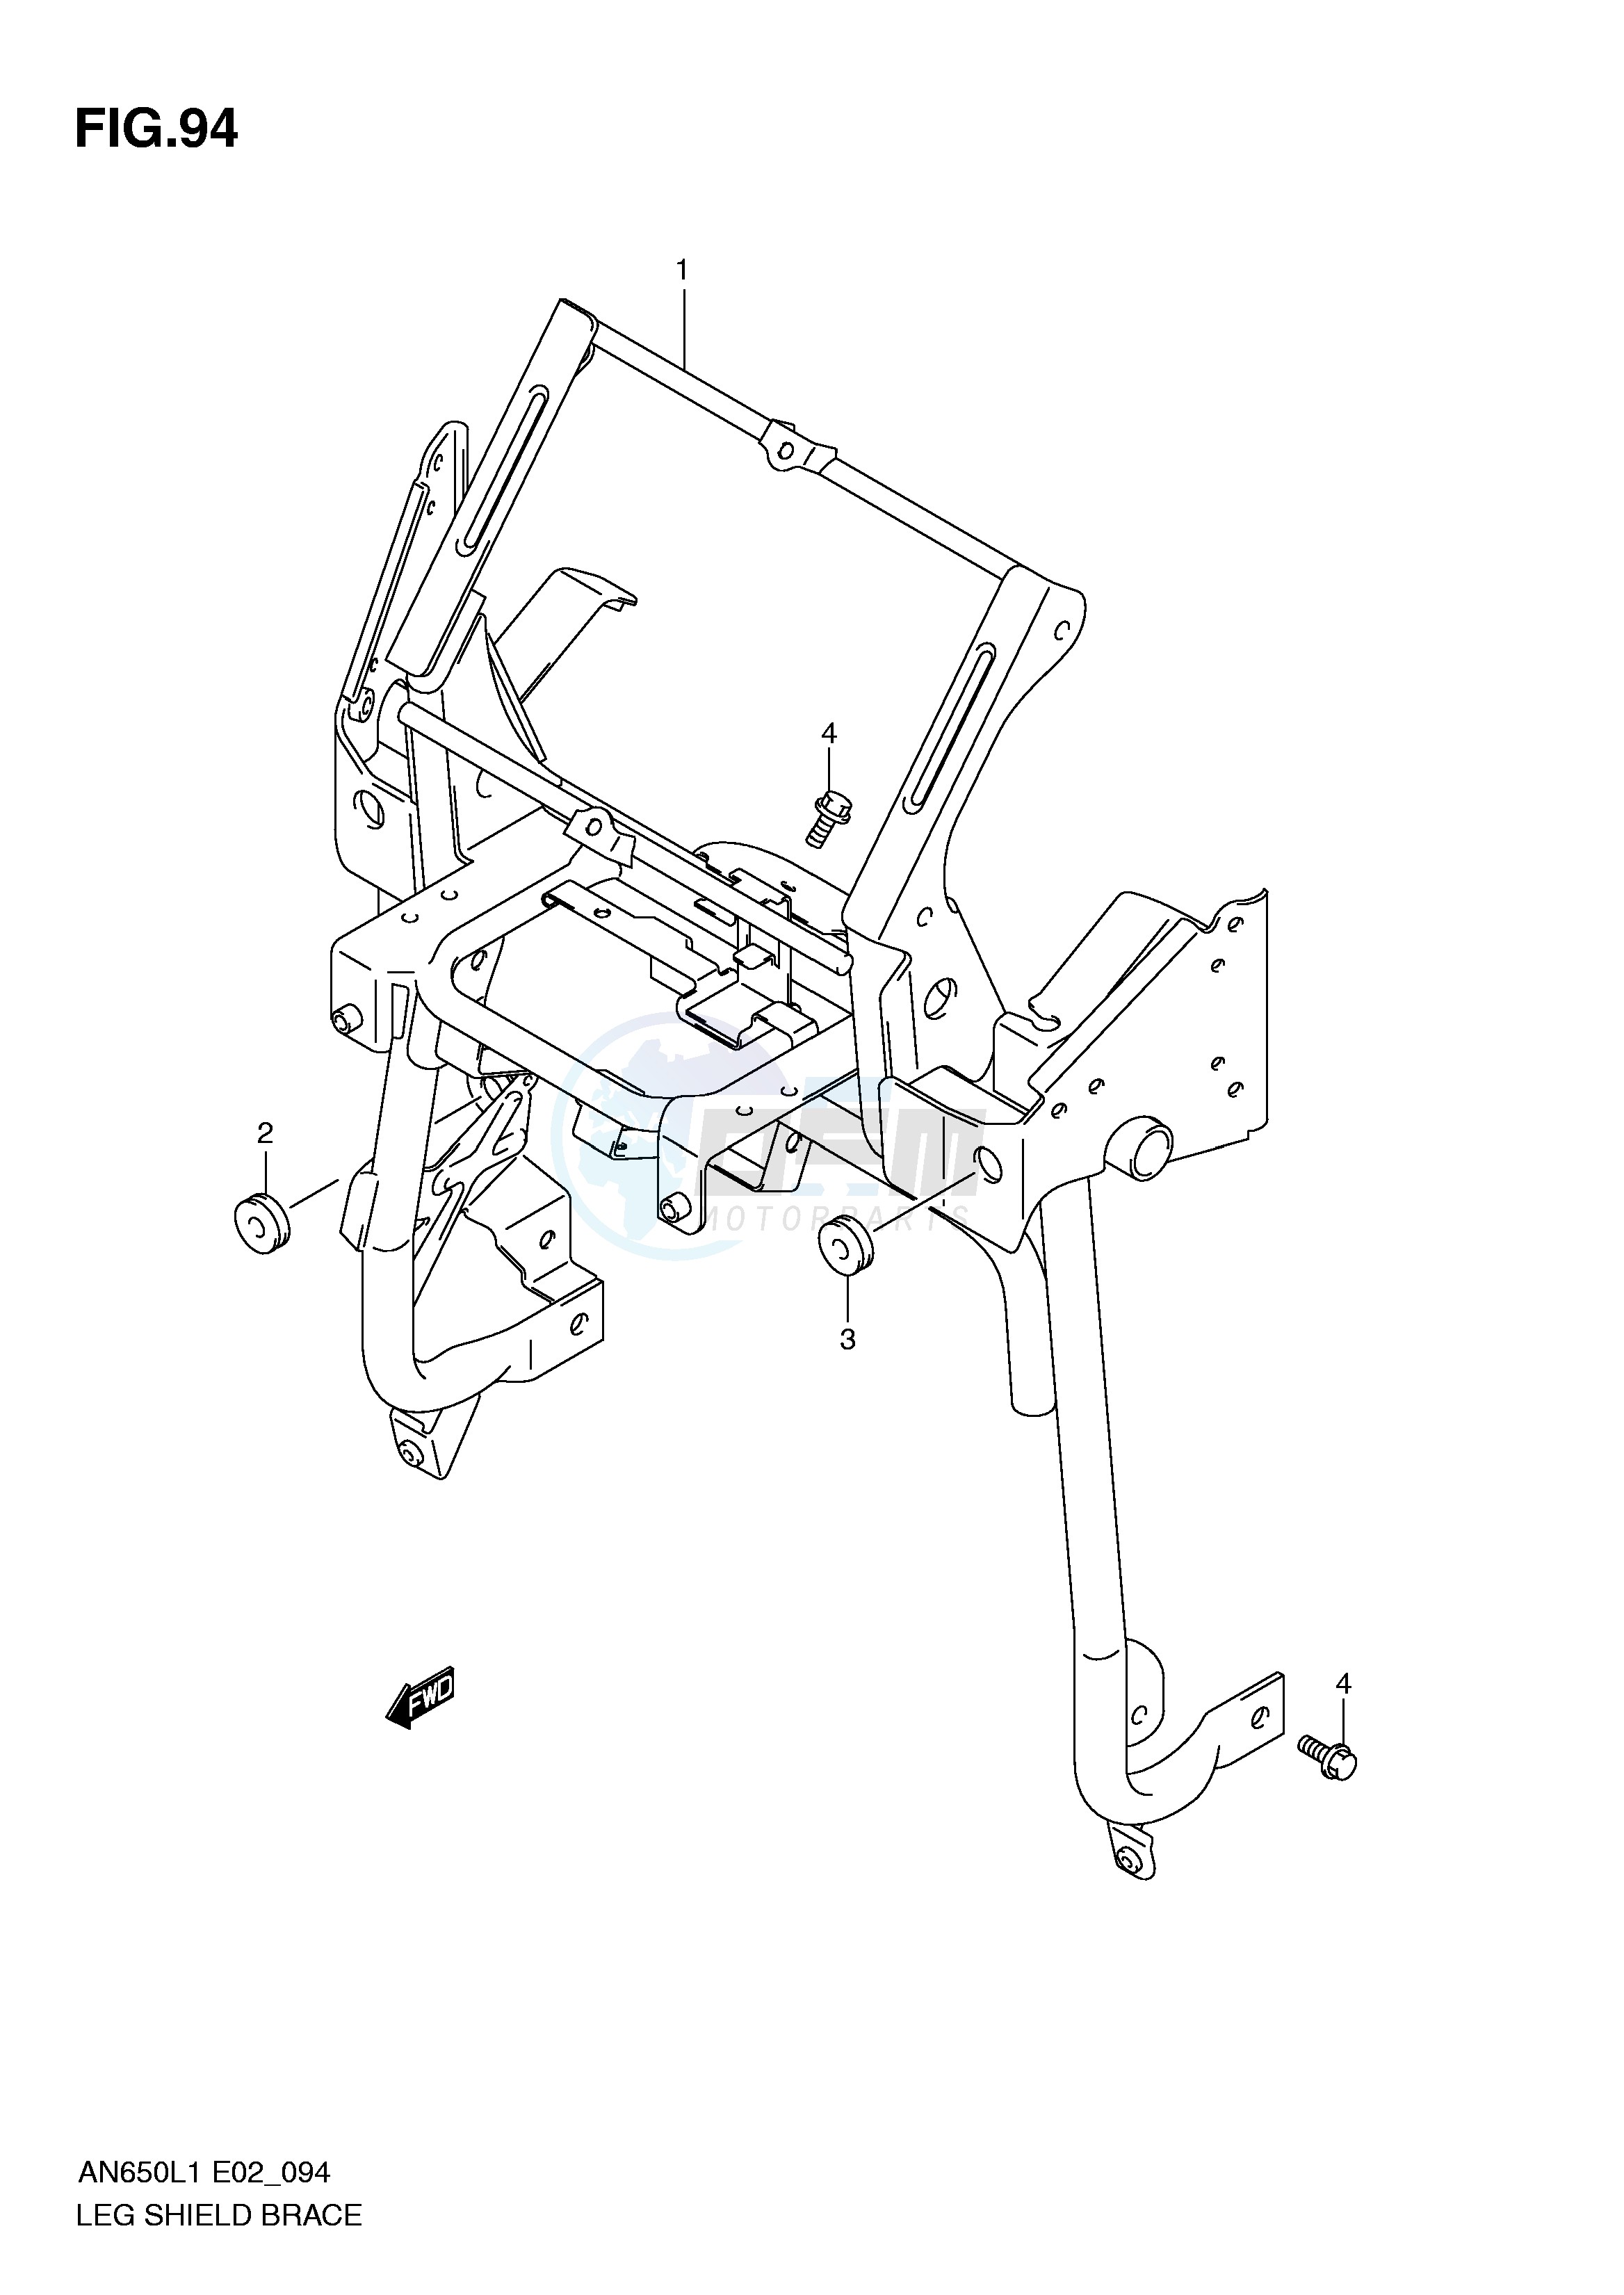 LEG SHIELD BRACE (AN650AL1 E51) blueprint